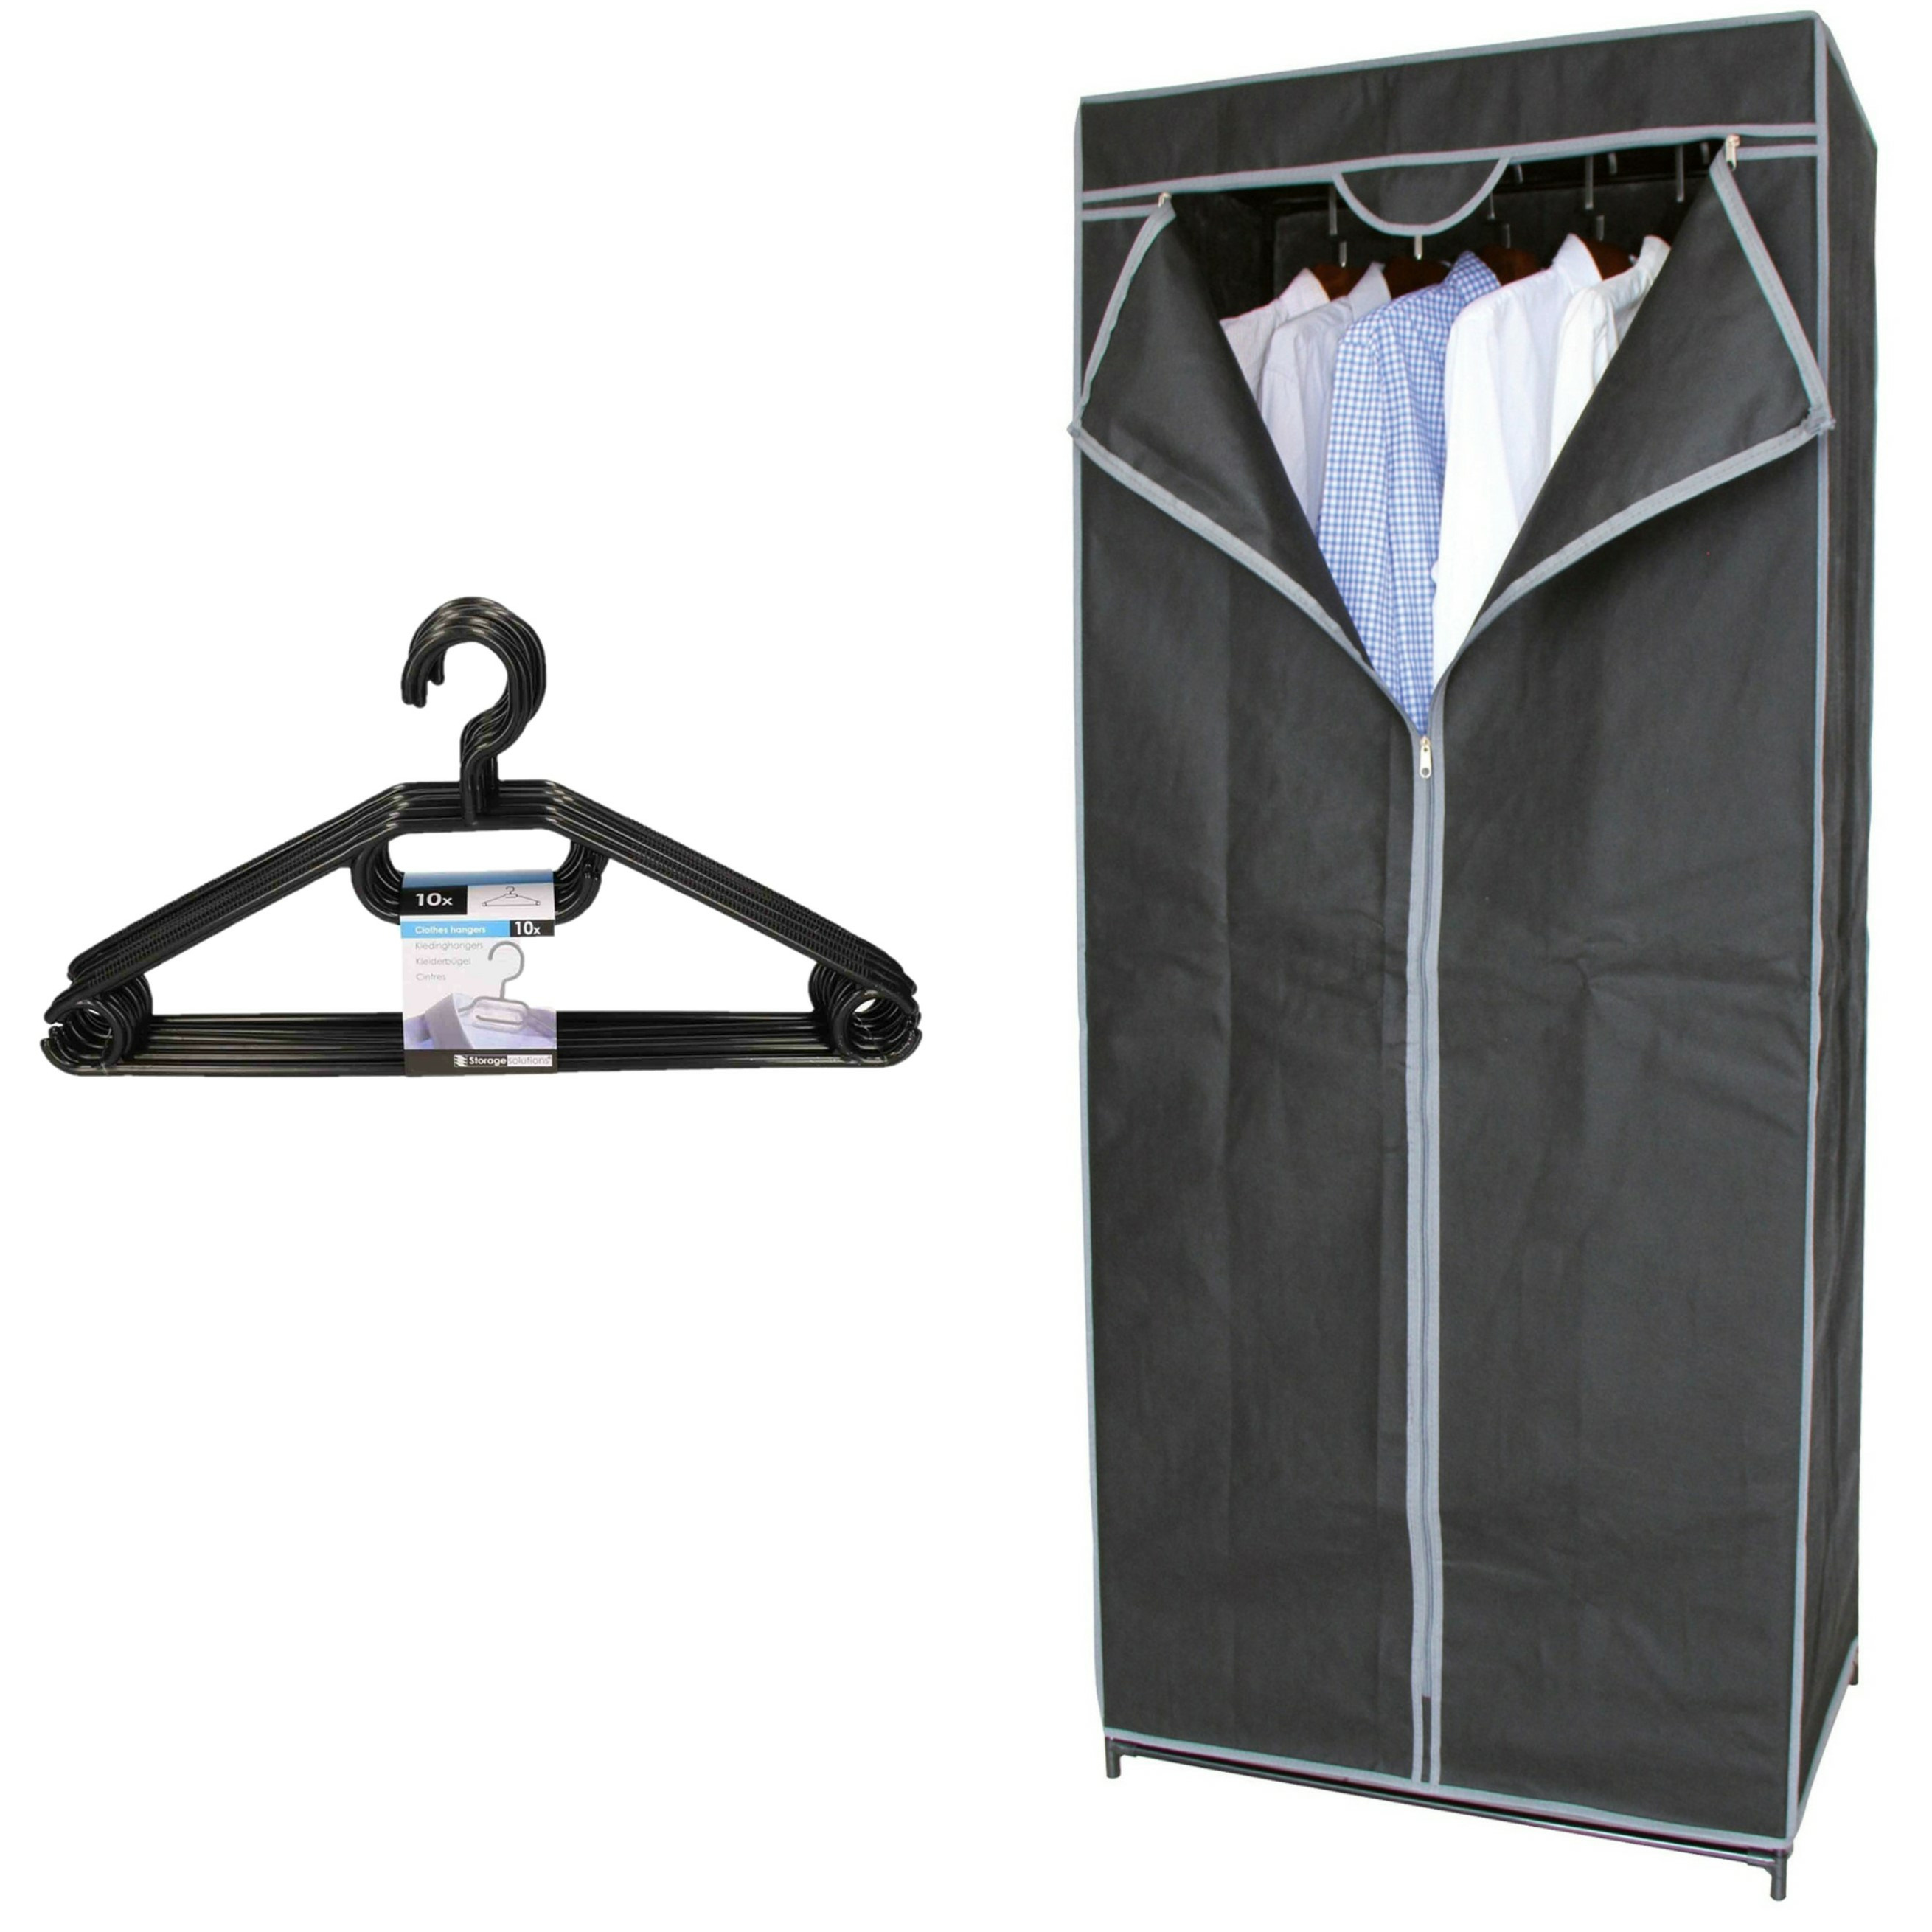 Mobiele kledingkast 70 x 45 x 160 cm incl. kledinghanger set 10x